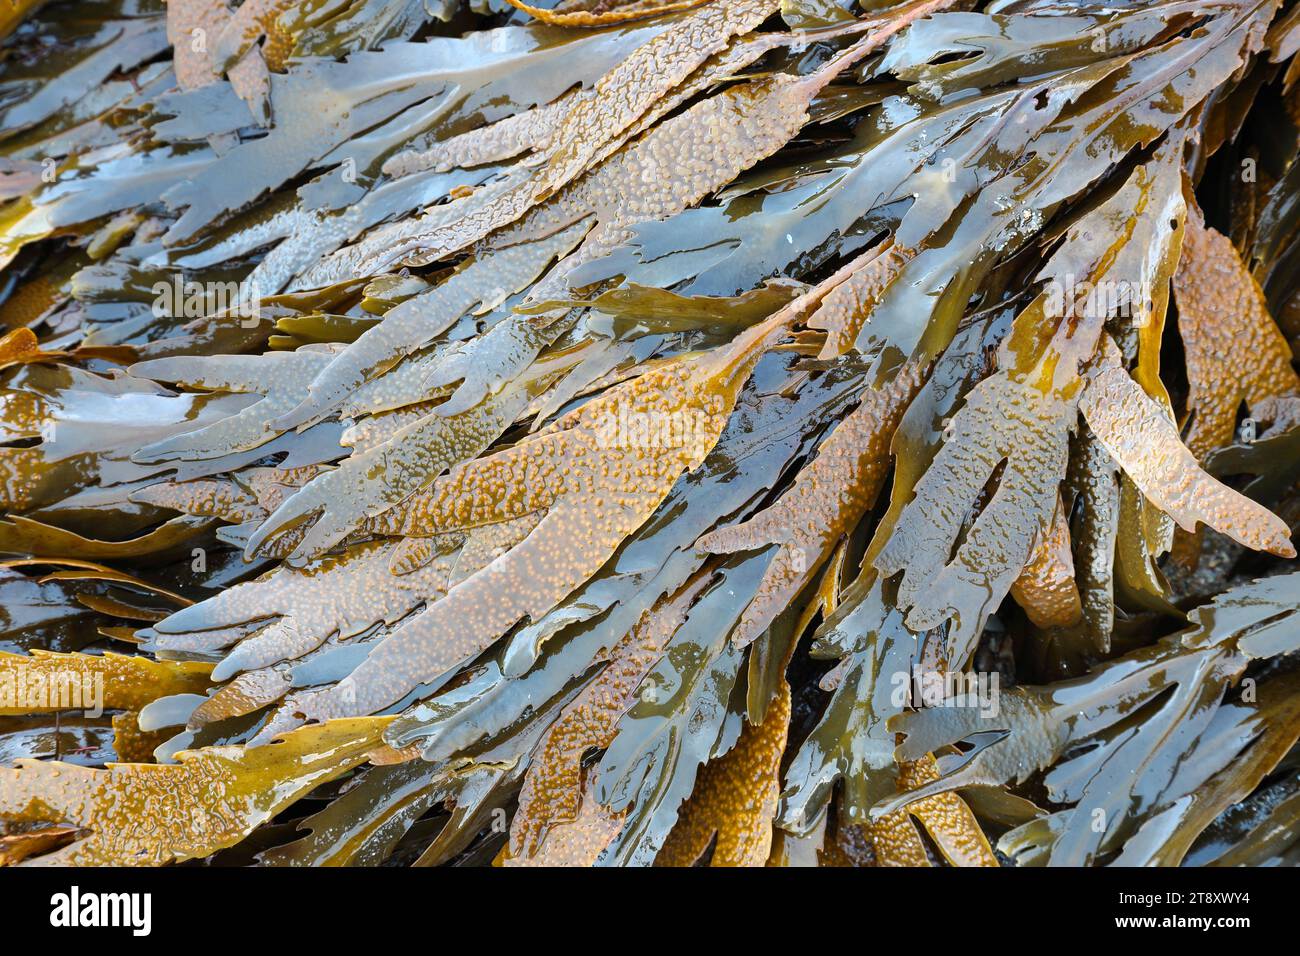 Algue crack dentelée, également connue sous le nom d'algue crack dentelée (Fucus serratus), côte de Fife, Écosse, Royaume-Uni Banque D'Images